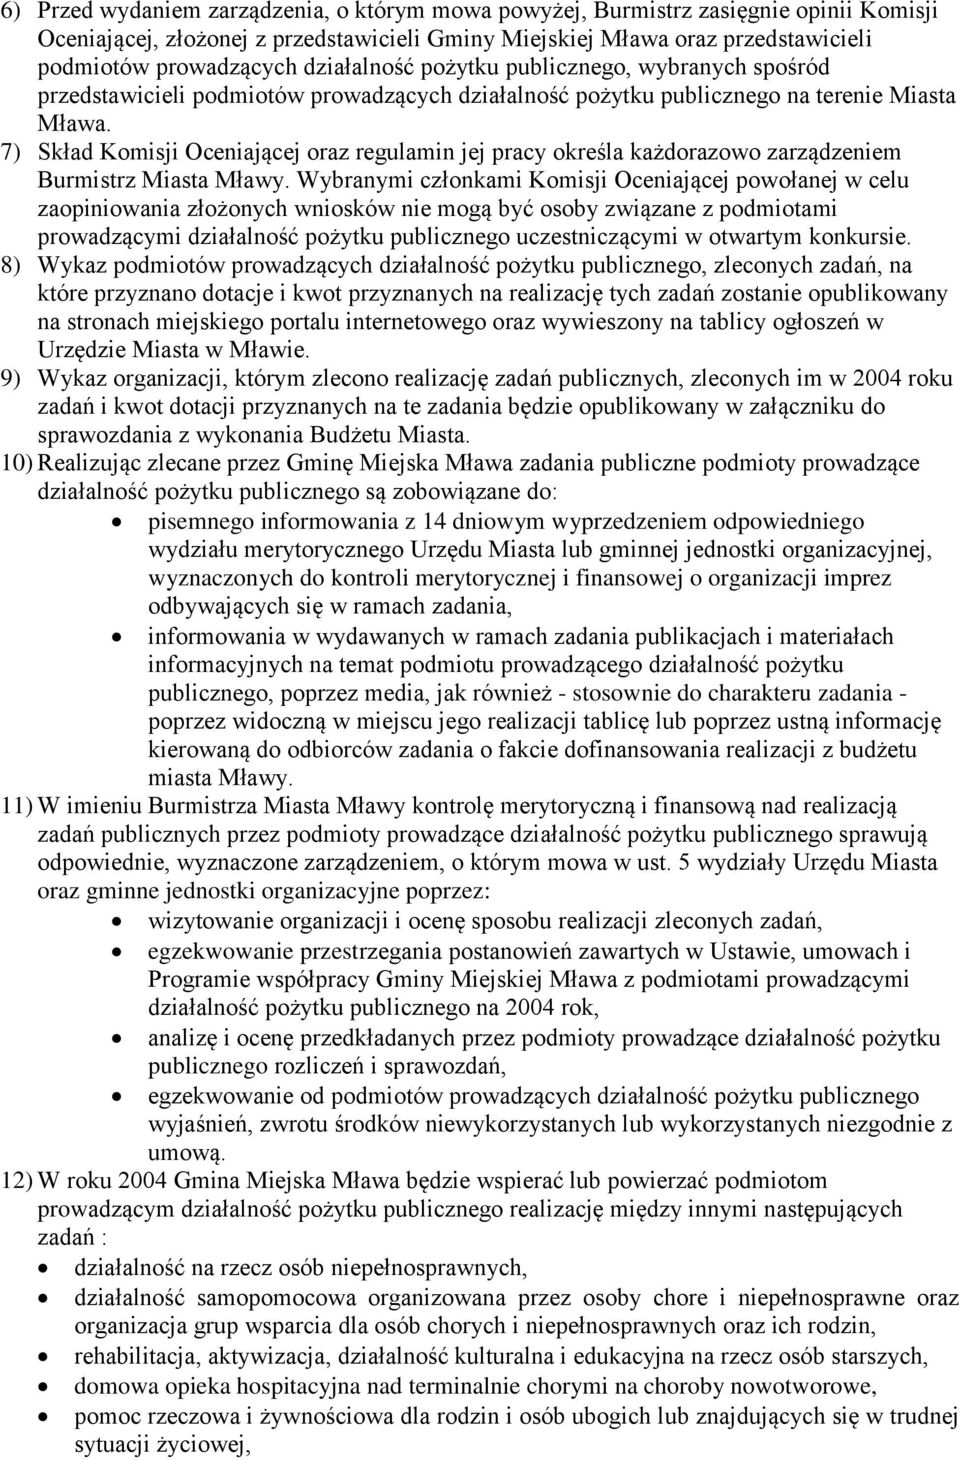 7) Skład Komisji Oceniającej oraz regulamin jej pracy określa każdorazowo zarządzeniem Burmistrz Miasta Mławy.